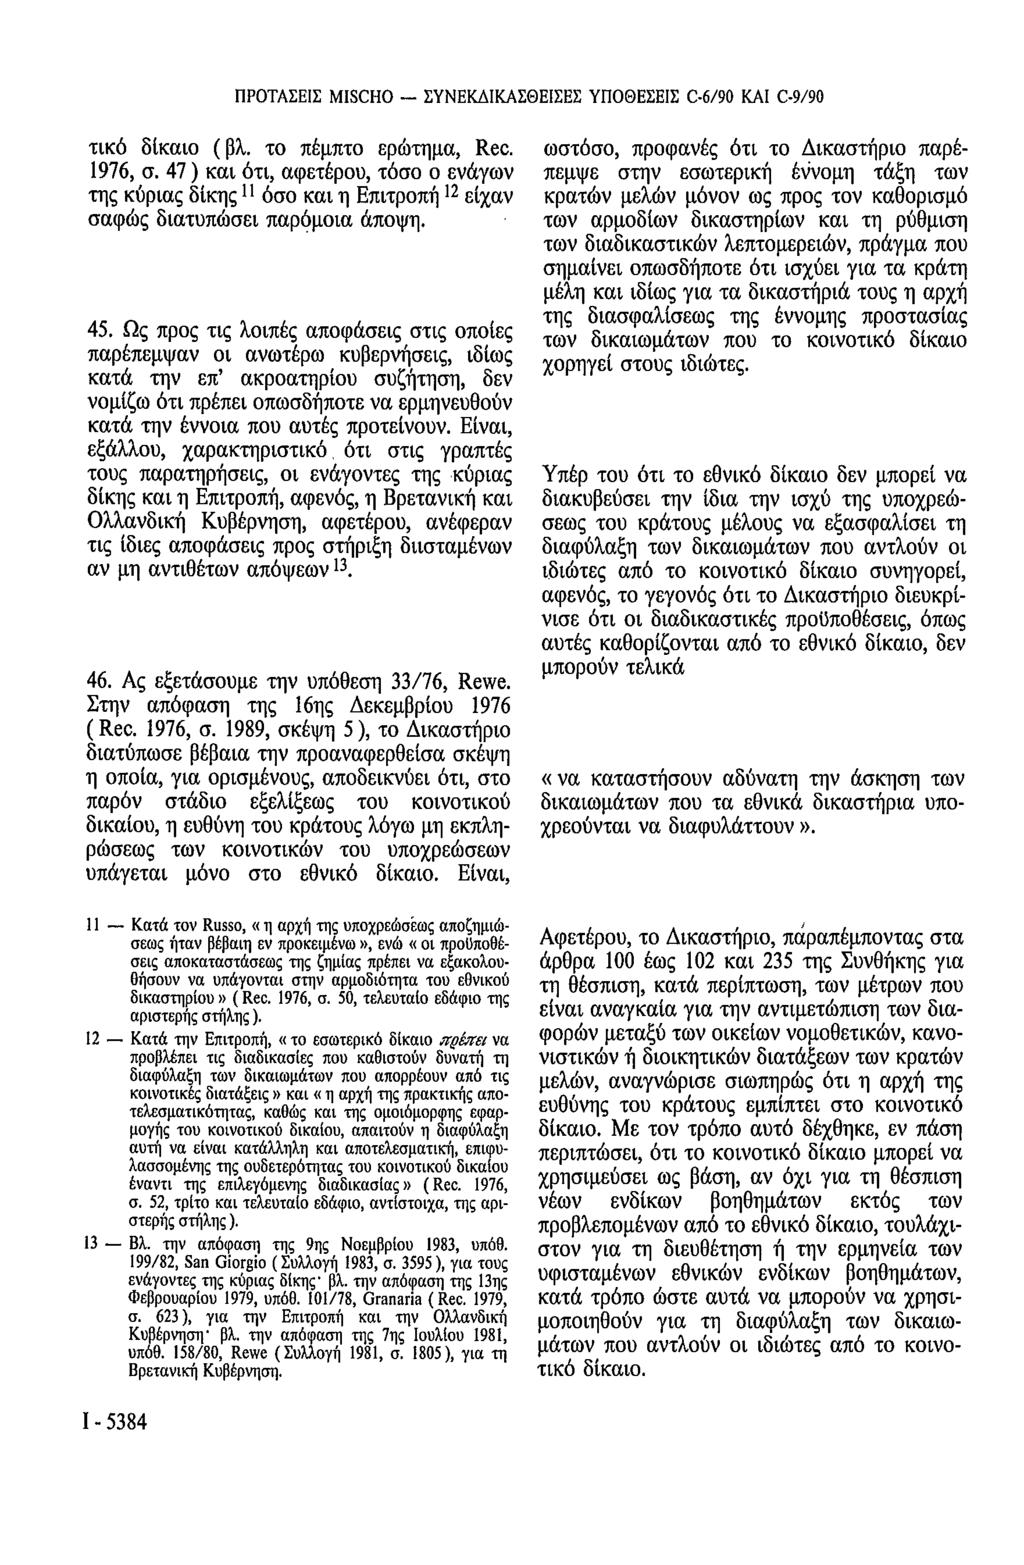 ΠΡΟΤΑΣΕΙΣ MISCHO - ΣΥΝΕΚΔΙΚΑΣΘΕΙΣΕΣ ΥΠΟΘΕΣΕΙΣ C-6/90 ΚΑΙ C-9/90 τικό δίκαιο (βλ. το πέμπτο ερώτημα, Rec. 1976, σ.